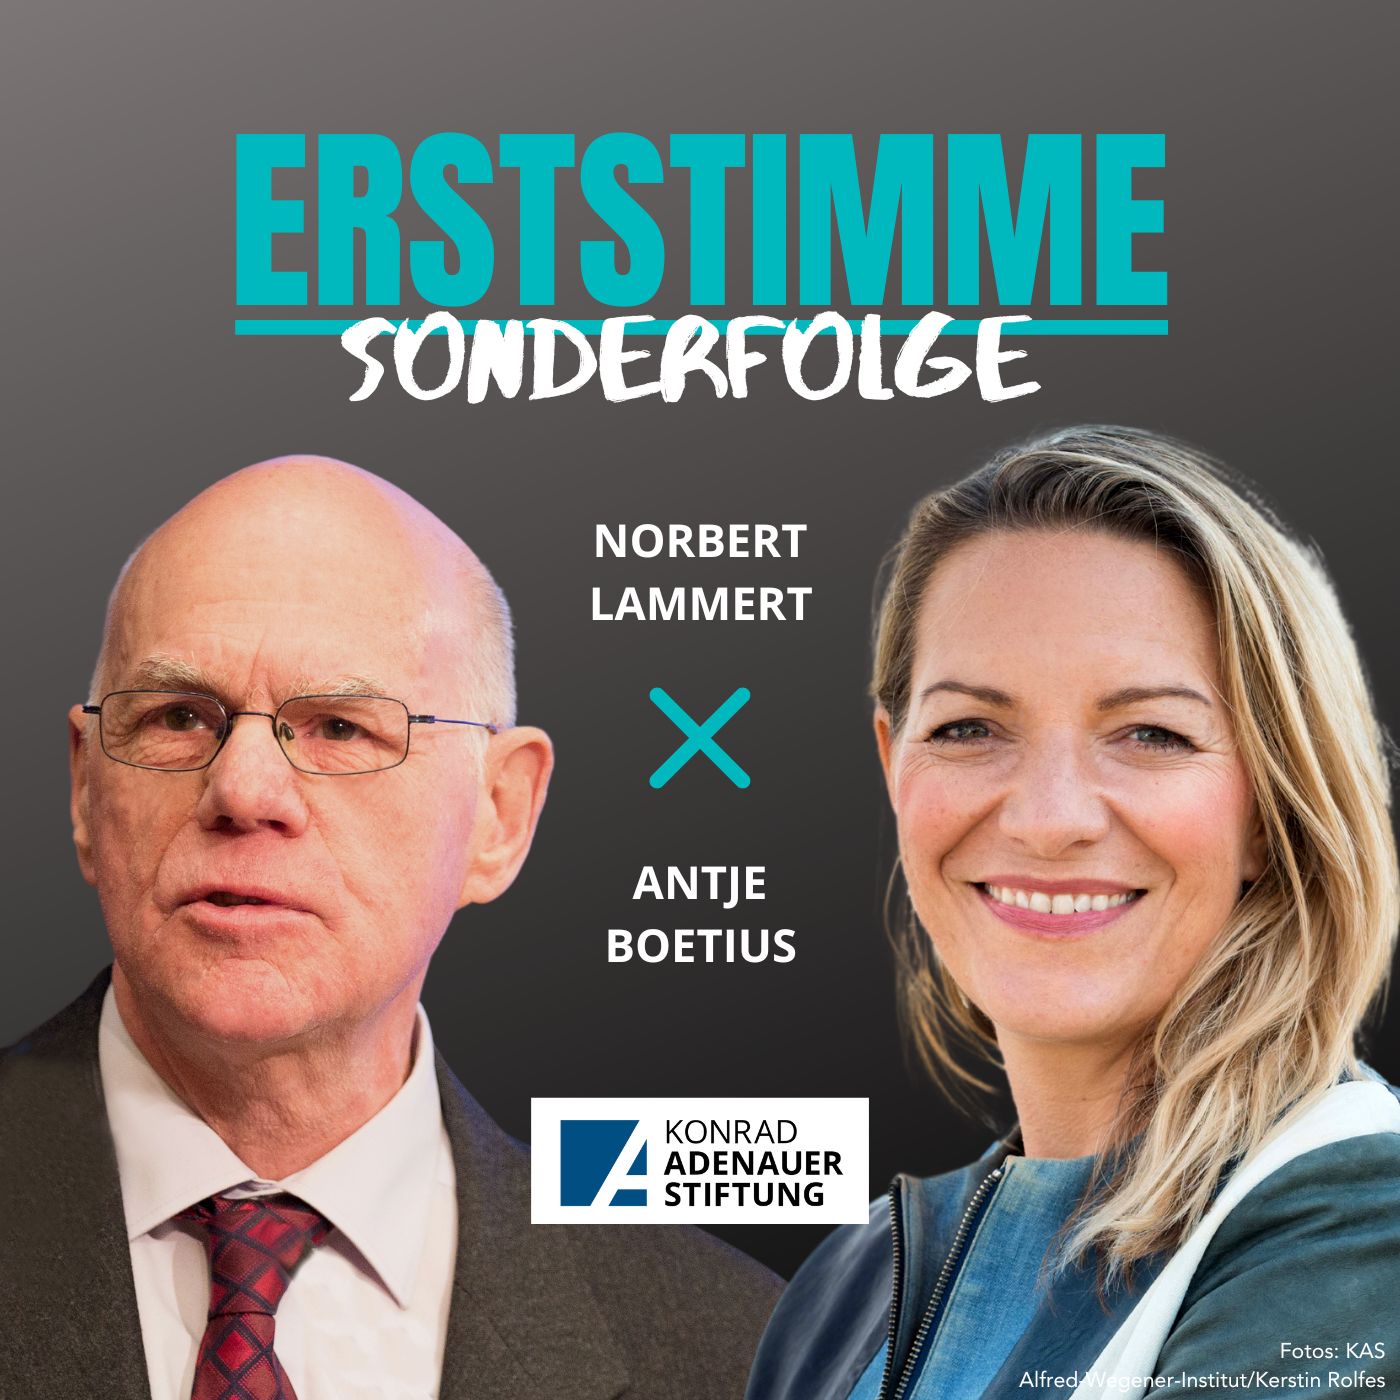 Erststimme #Sonderfolge: Norbert Lammert & Antje Boetius